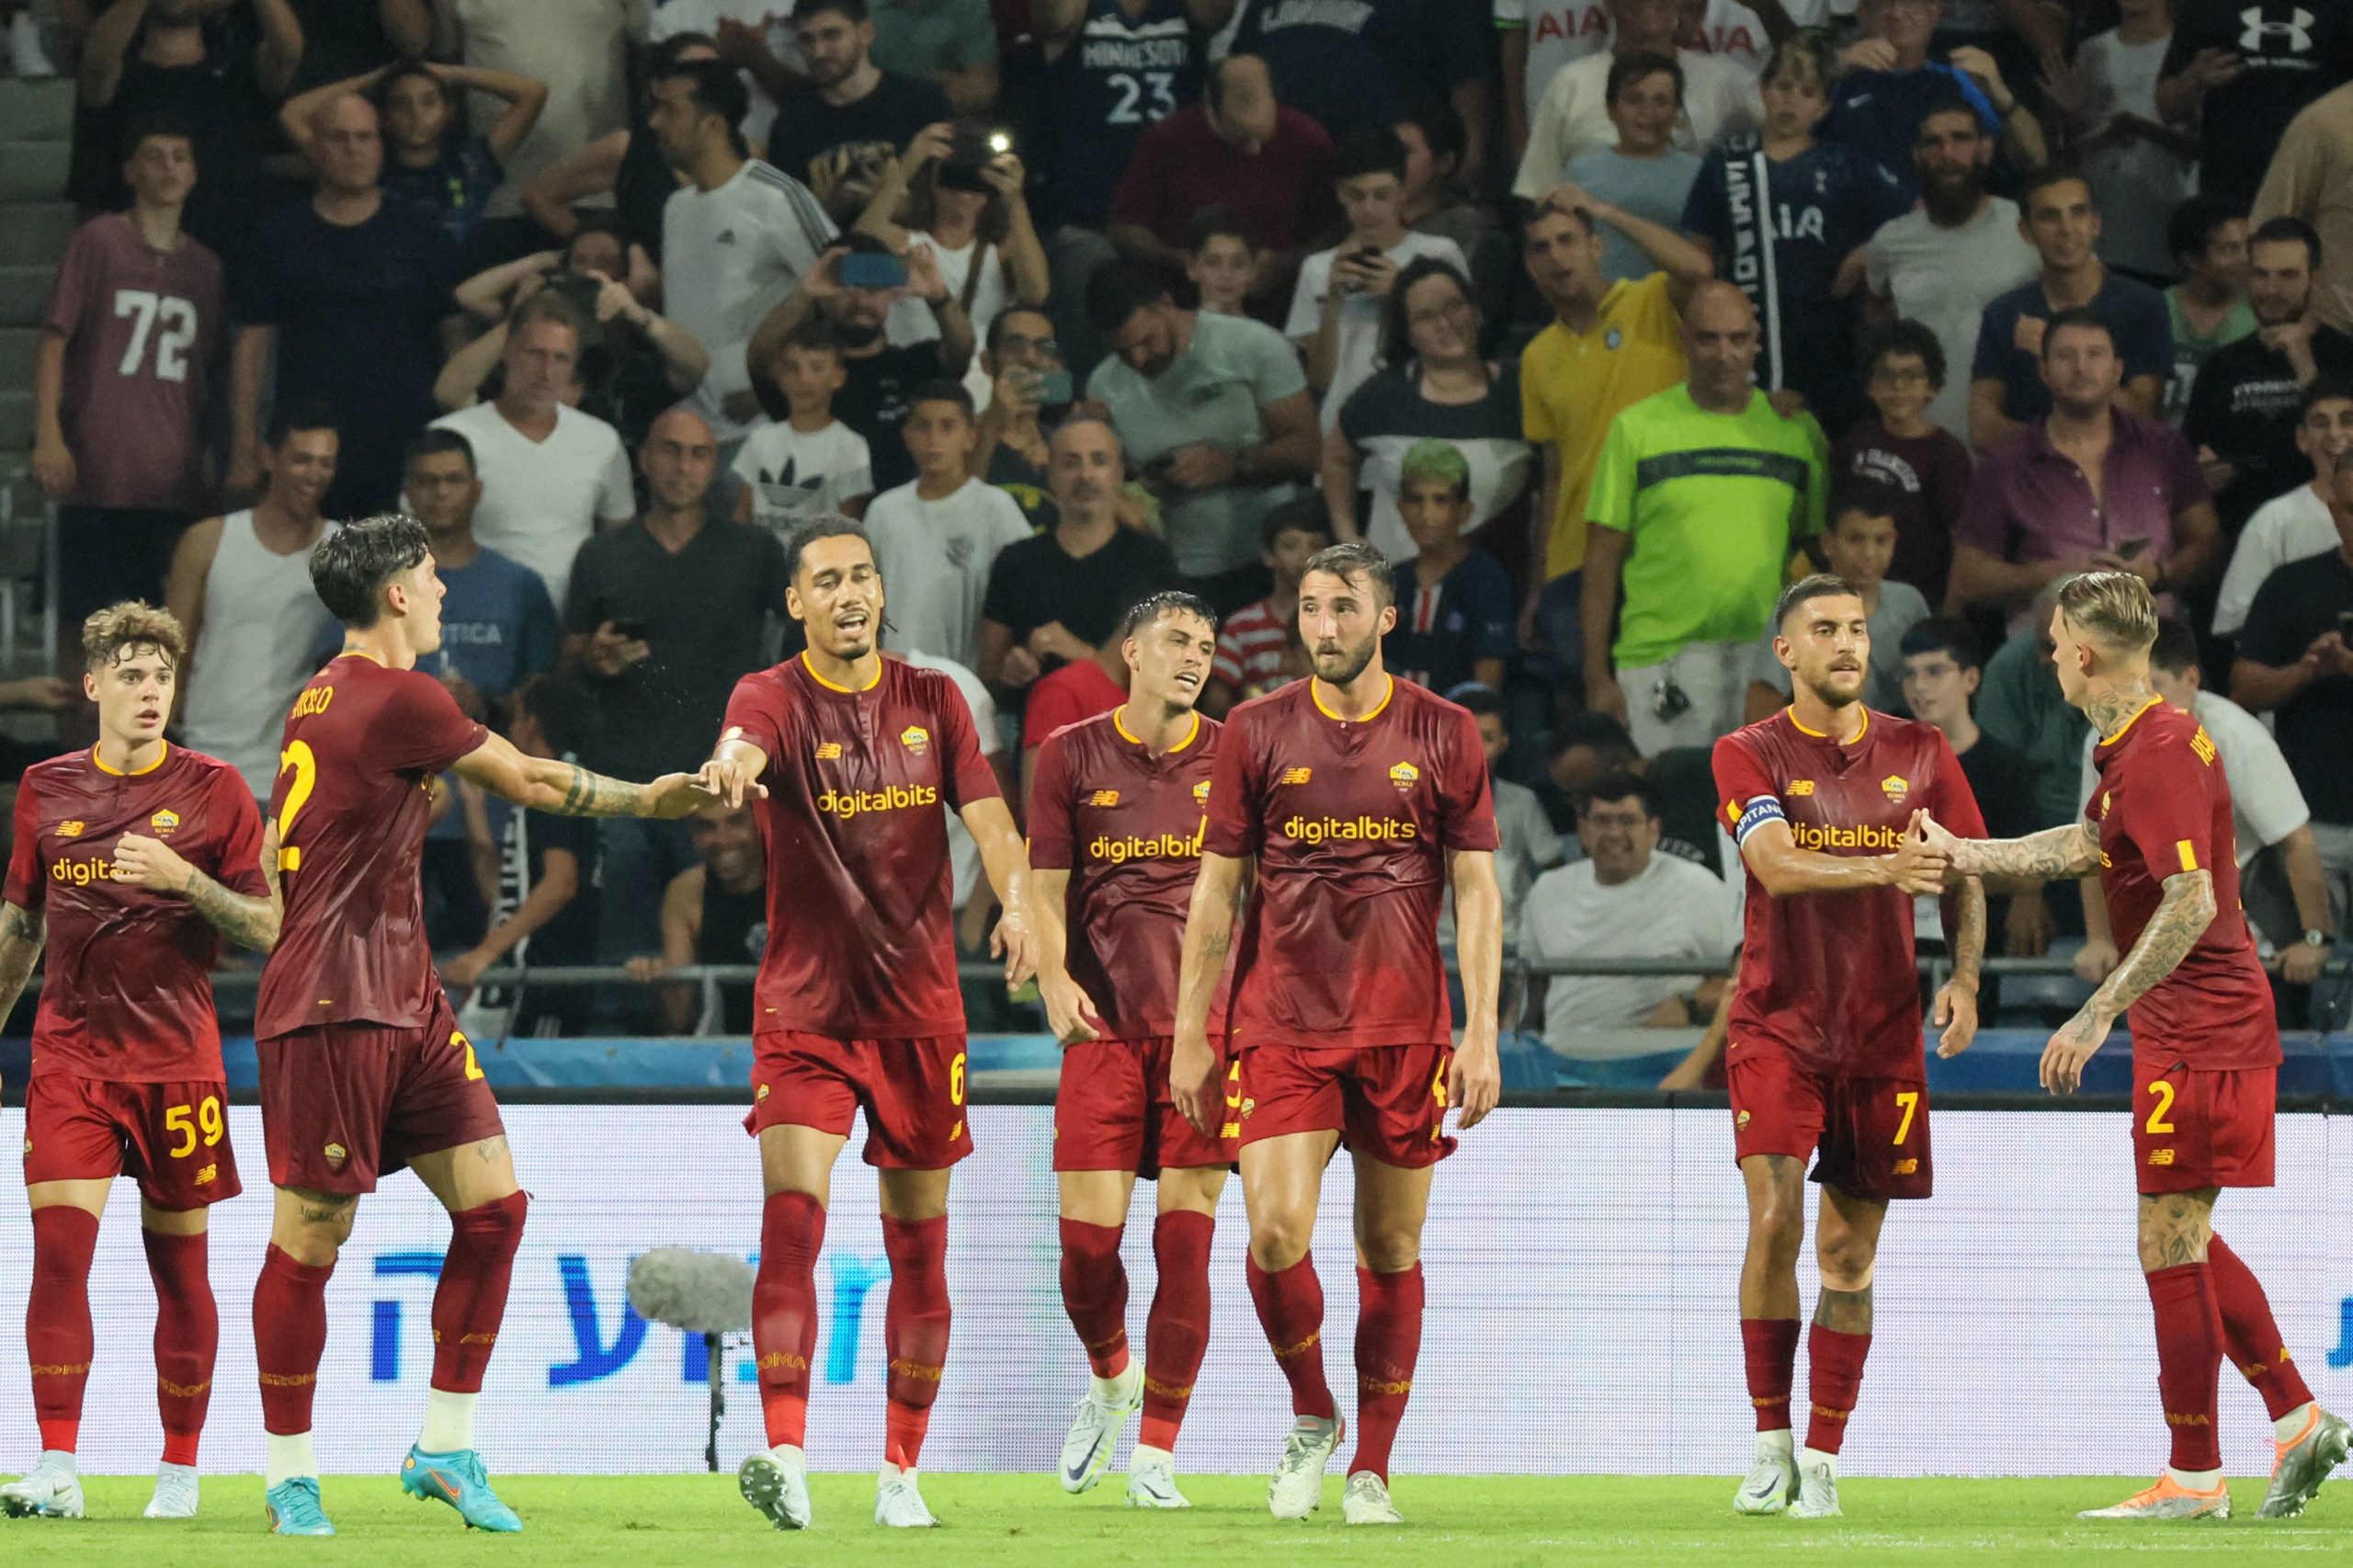 AO VIVO - Tottenham x Roma